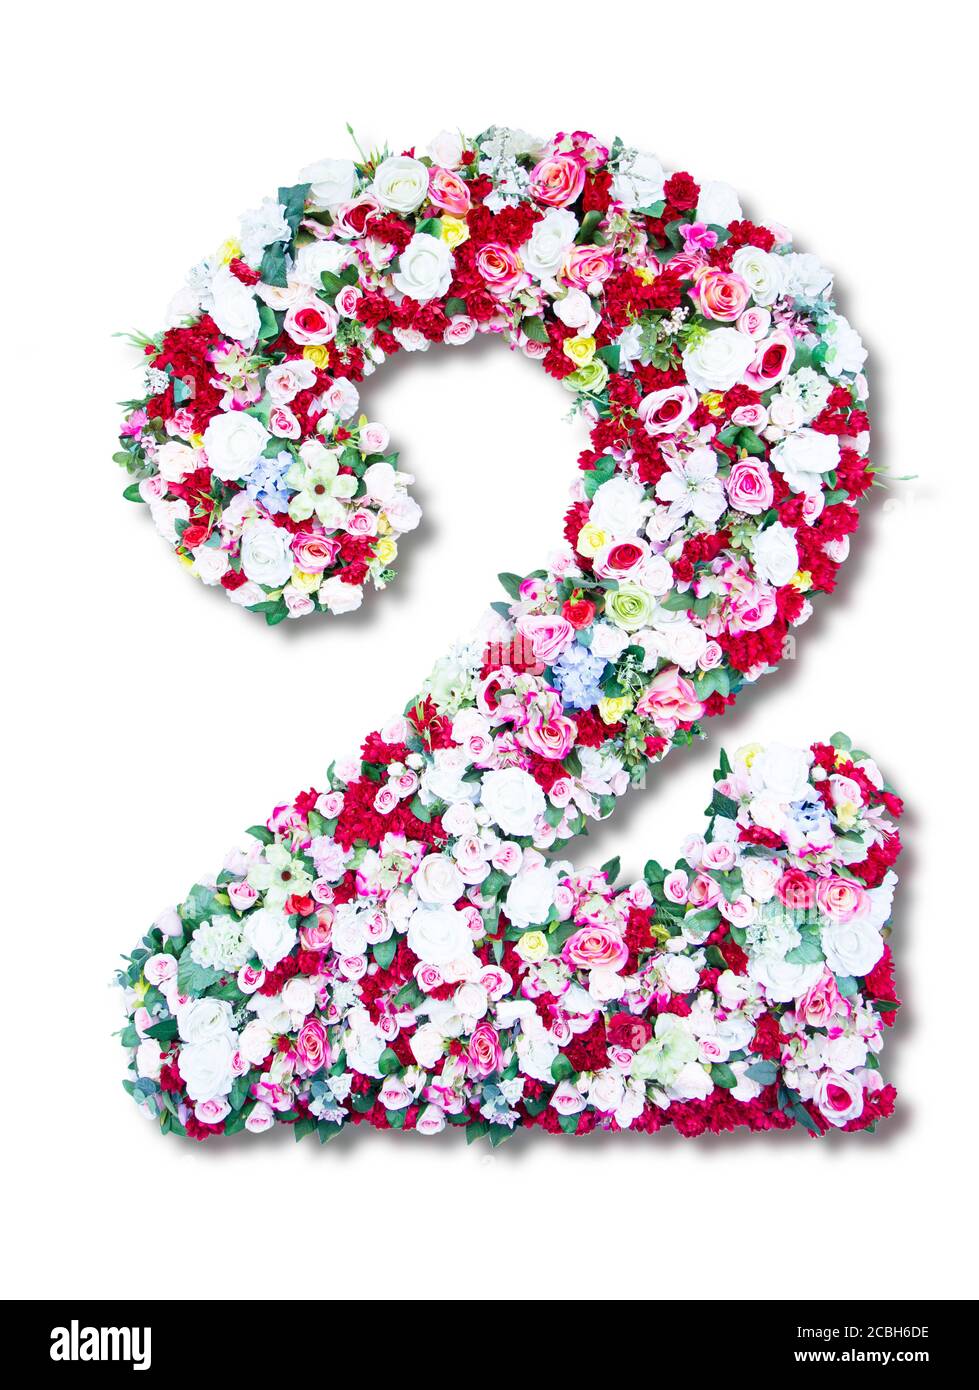 chiffre-arabe-2-fait-de-fleurs-colorees-isolees-sur-blanc-arriere-plan-2cbh6de.jpg